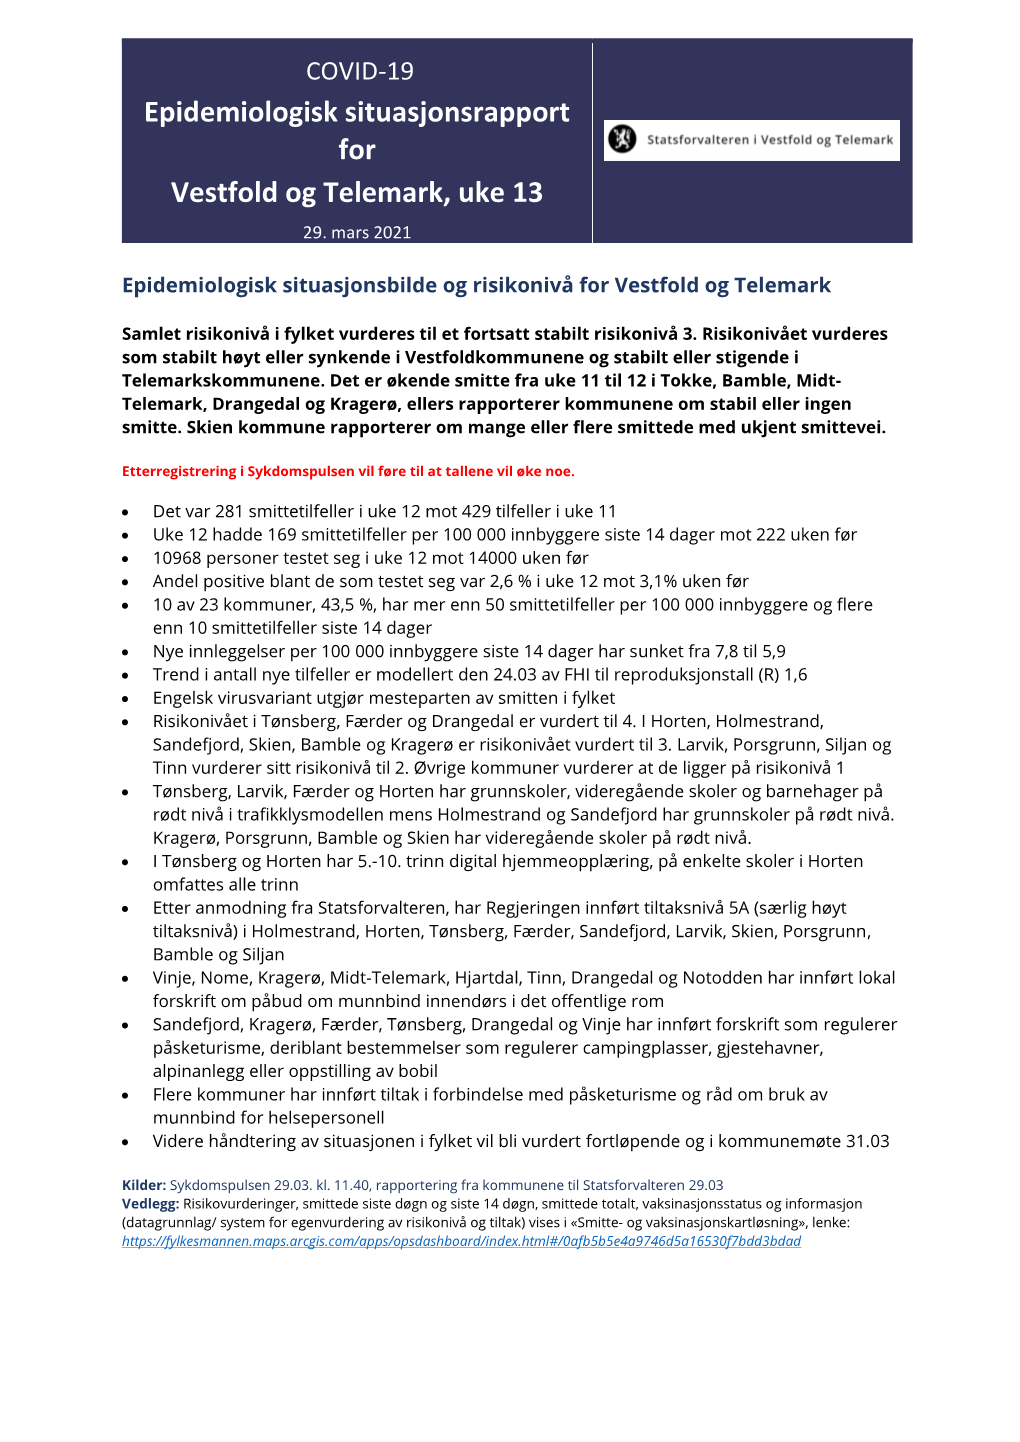 Epidemiologisk Situasjonsrapport for Vestfold Og Telemark, Uke 13